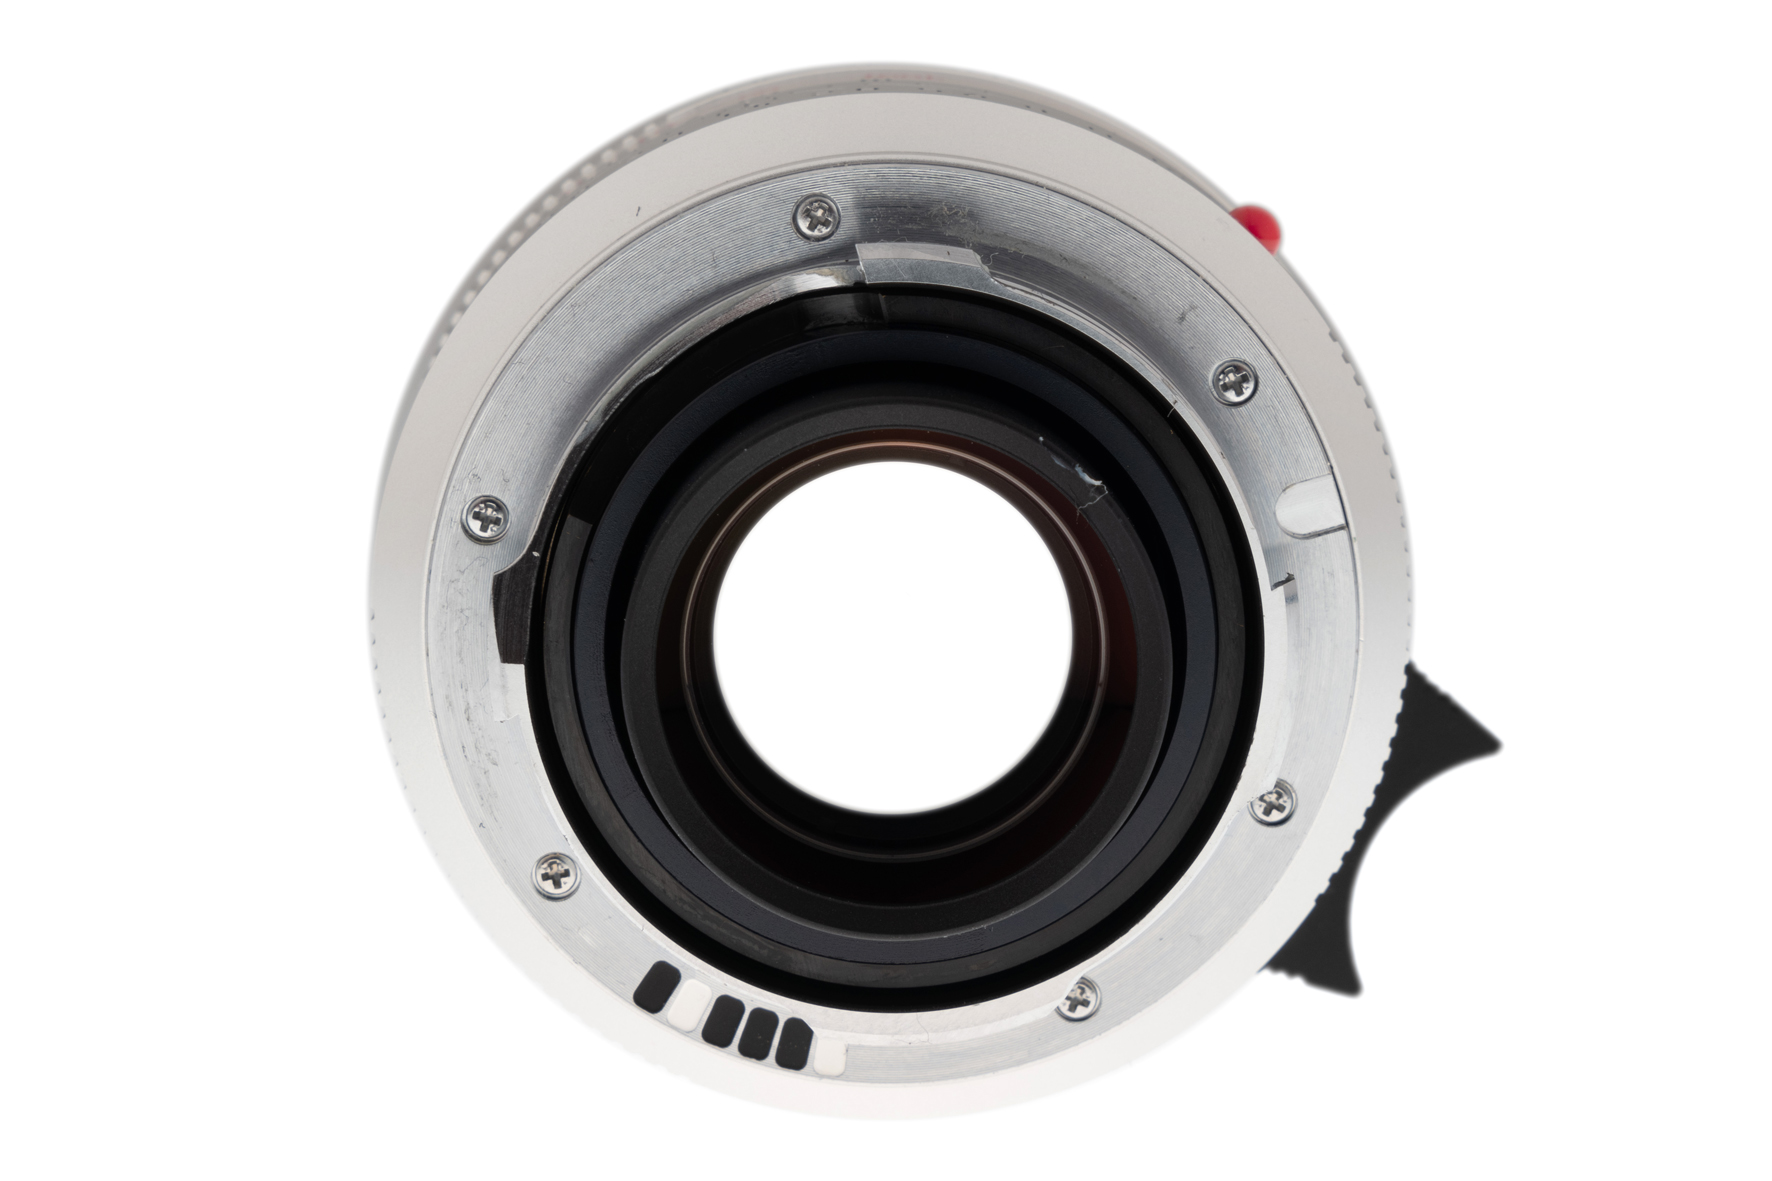  Leica Summilux-M 1:1,4/35mm ASPH. silbern